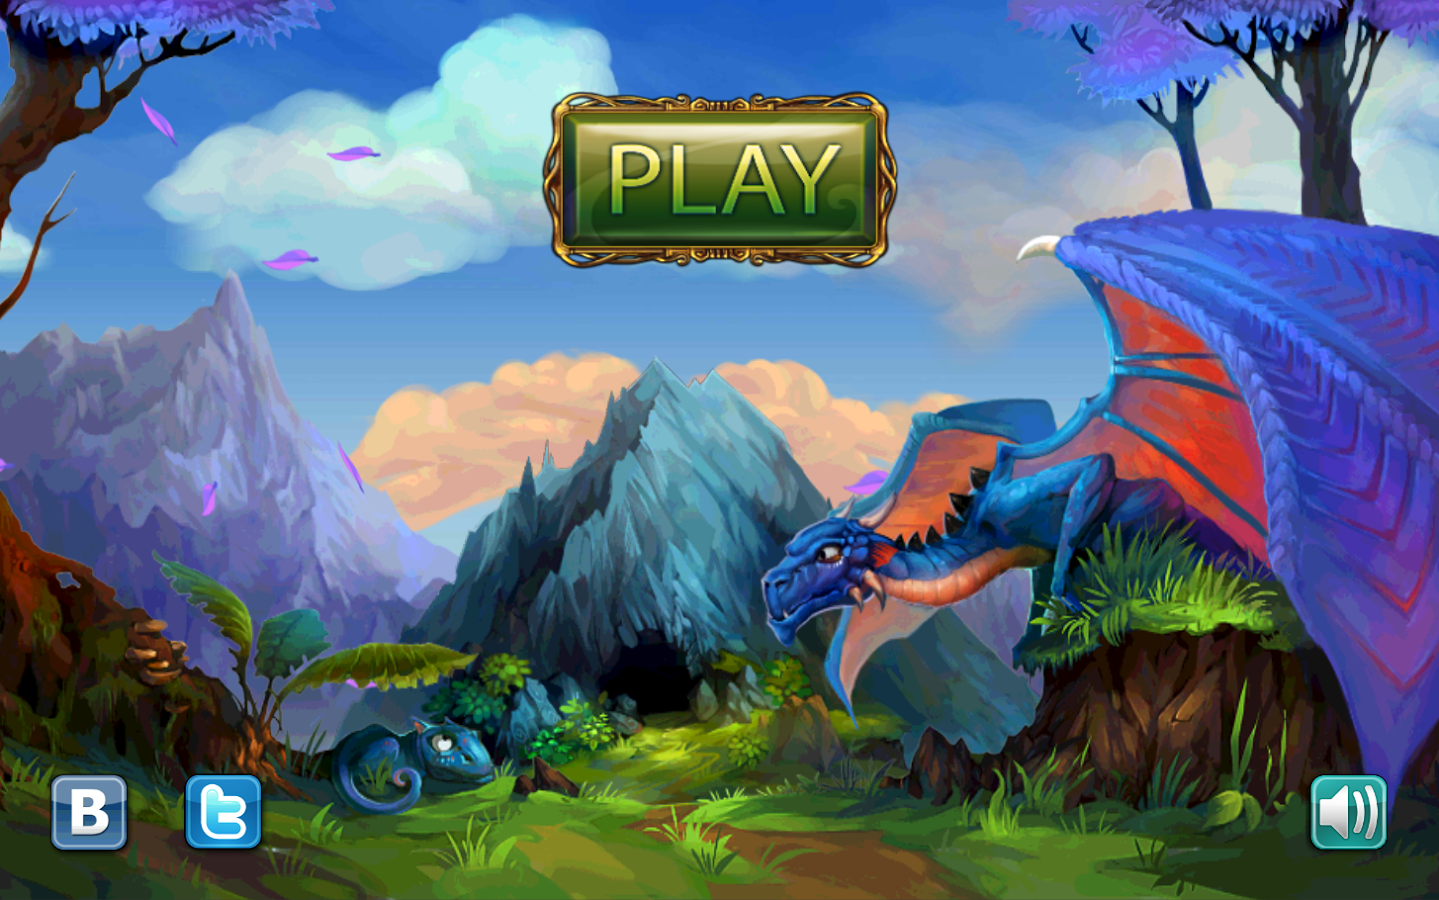 Игры драконы - играть в игры про драконов онлайн бесплатно для девочек и мальчиков